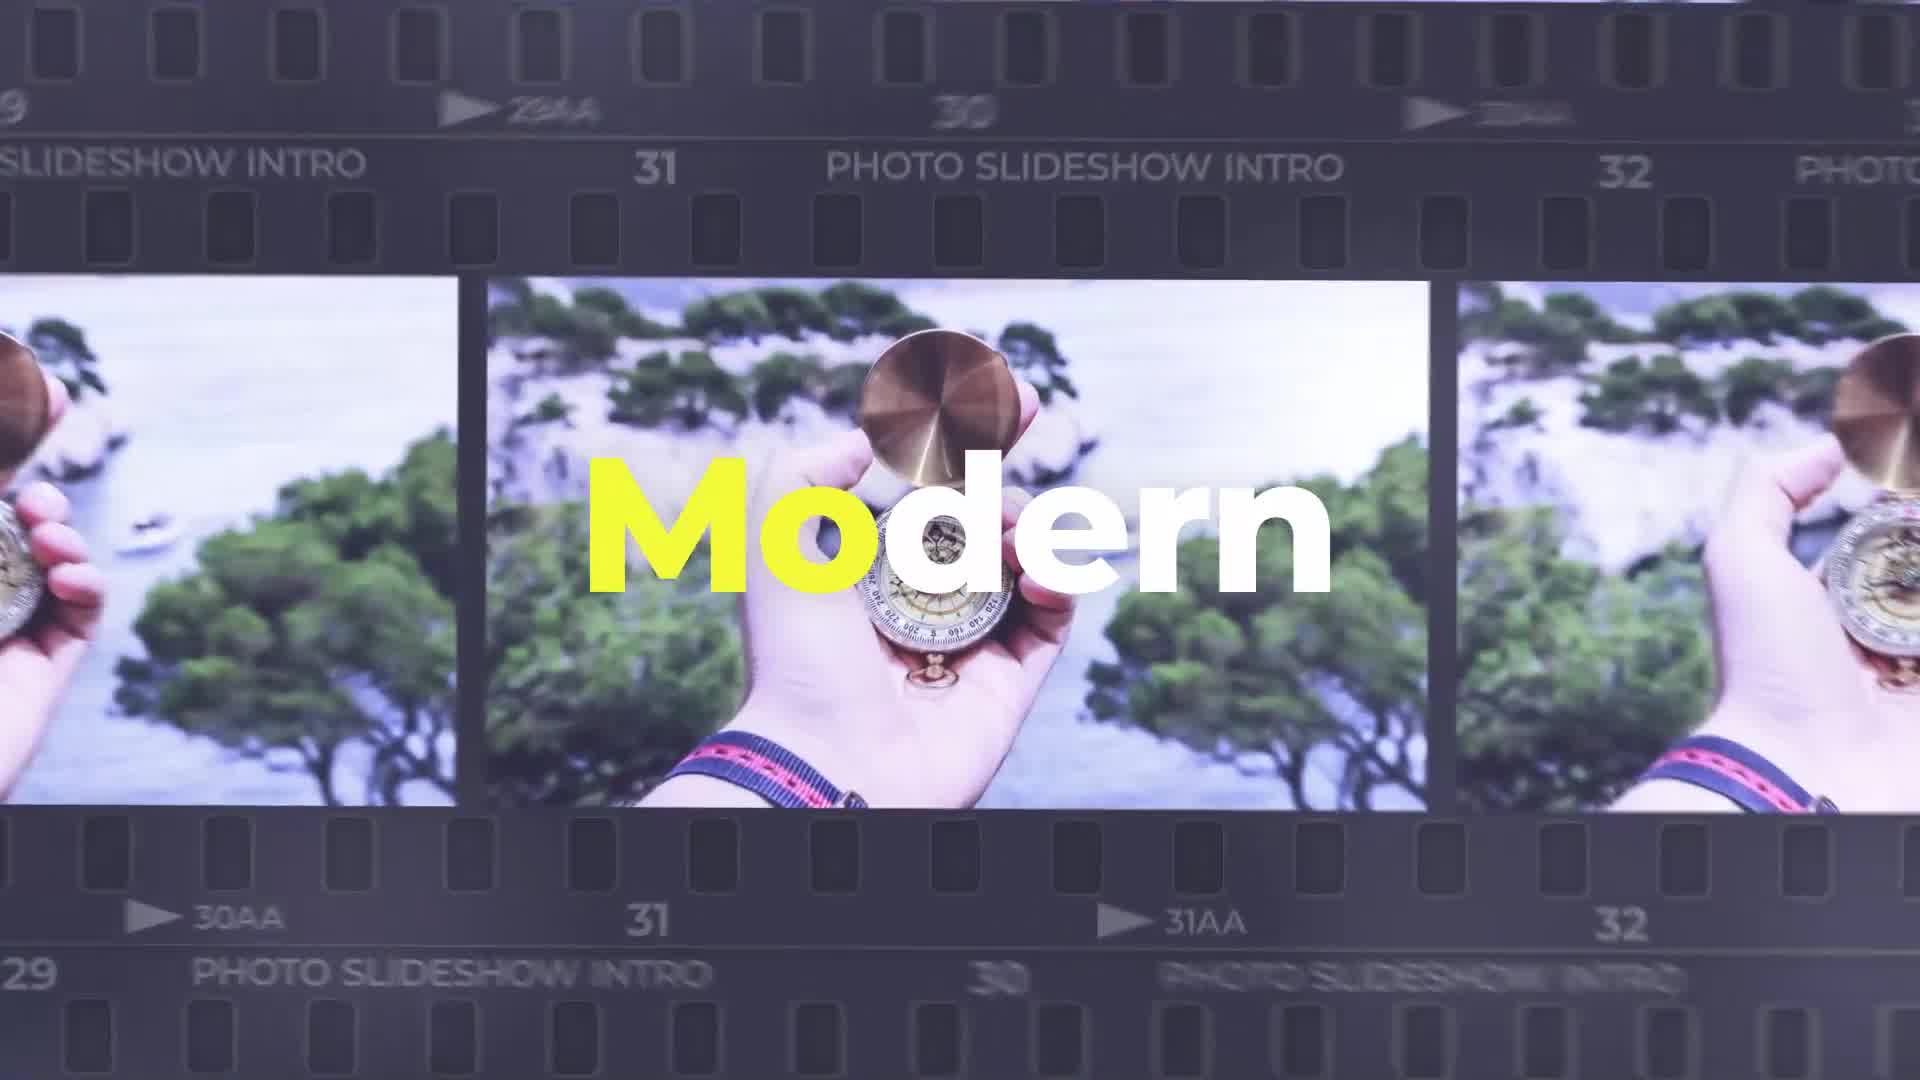 Photo Slideshow Intro Videohive 37898144 Premiere Pro Image 9